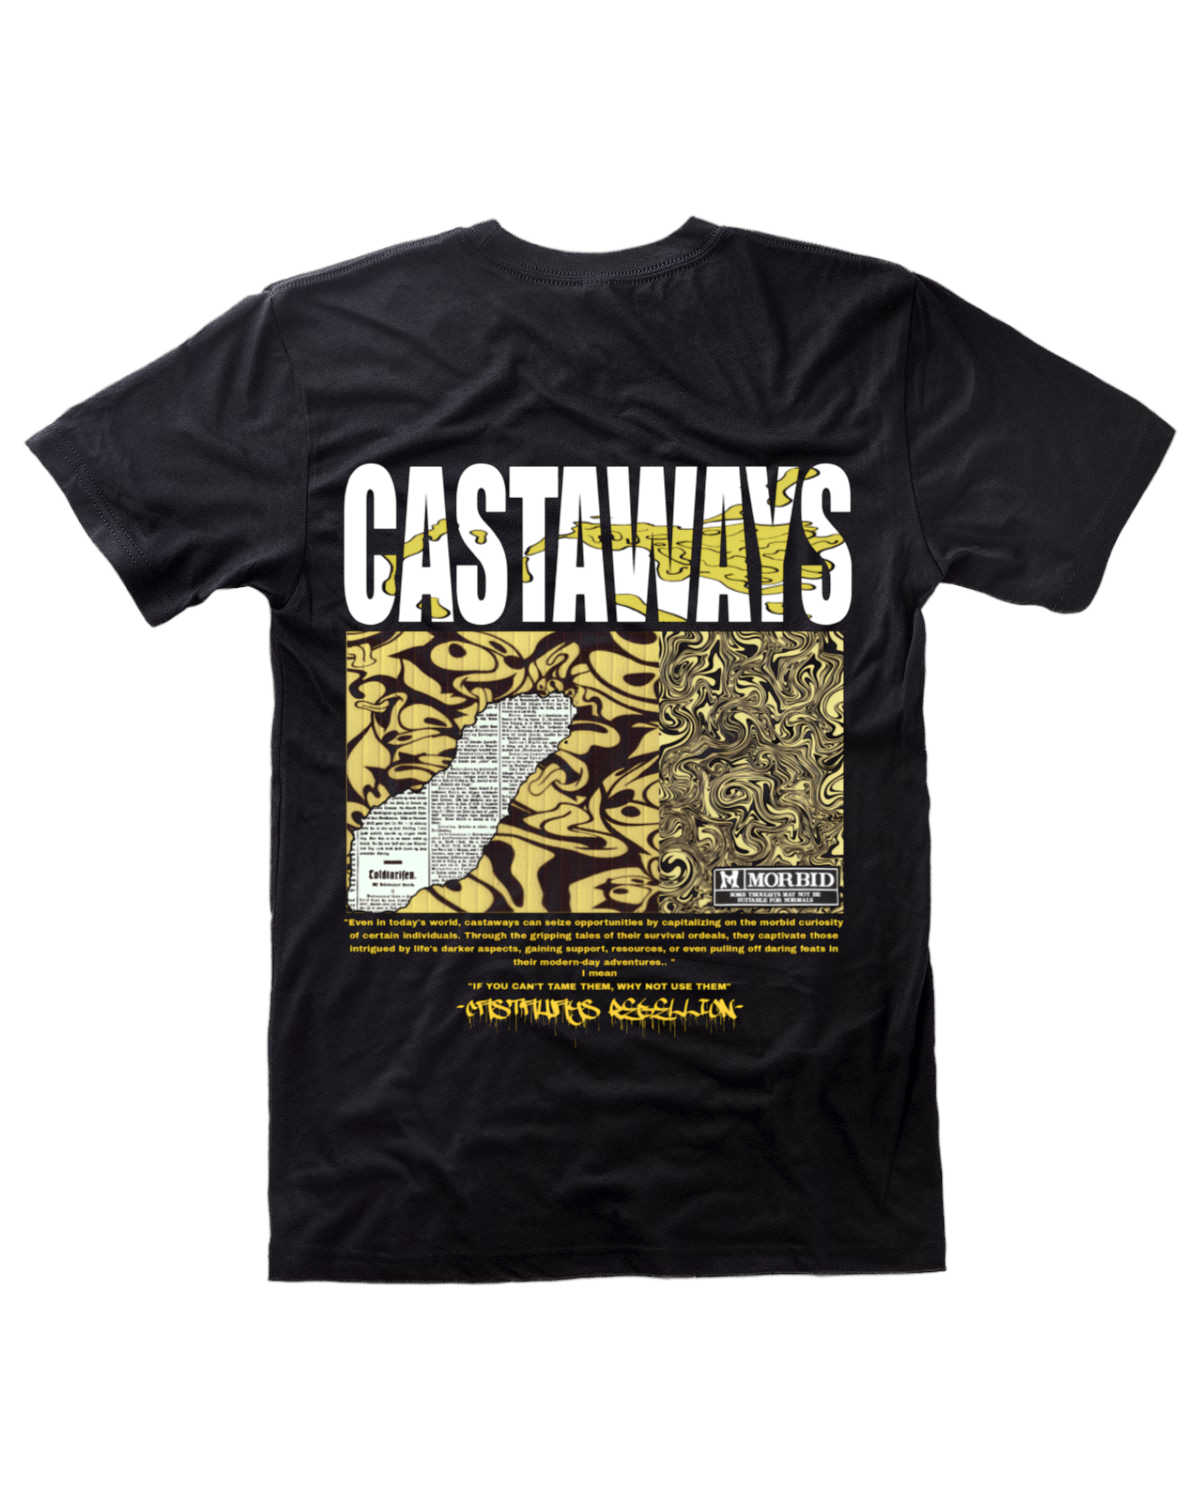 Castaways “draft’ tee